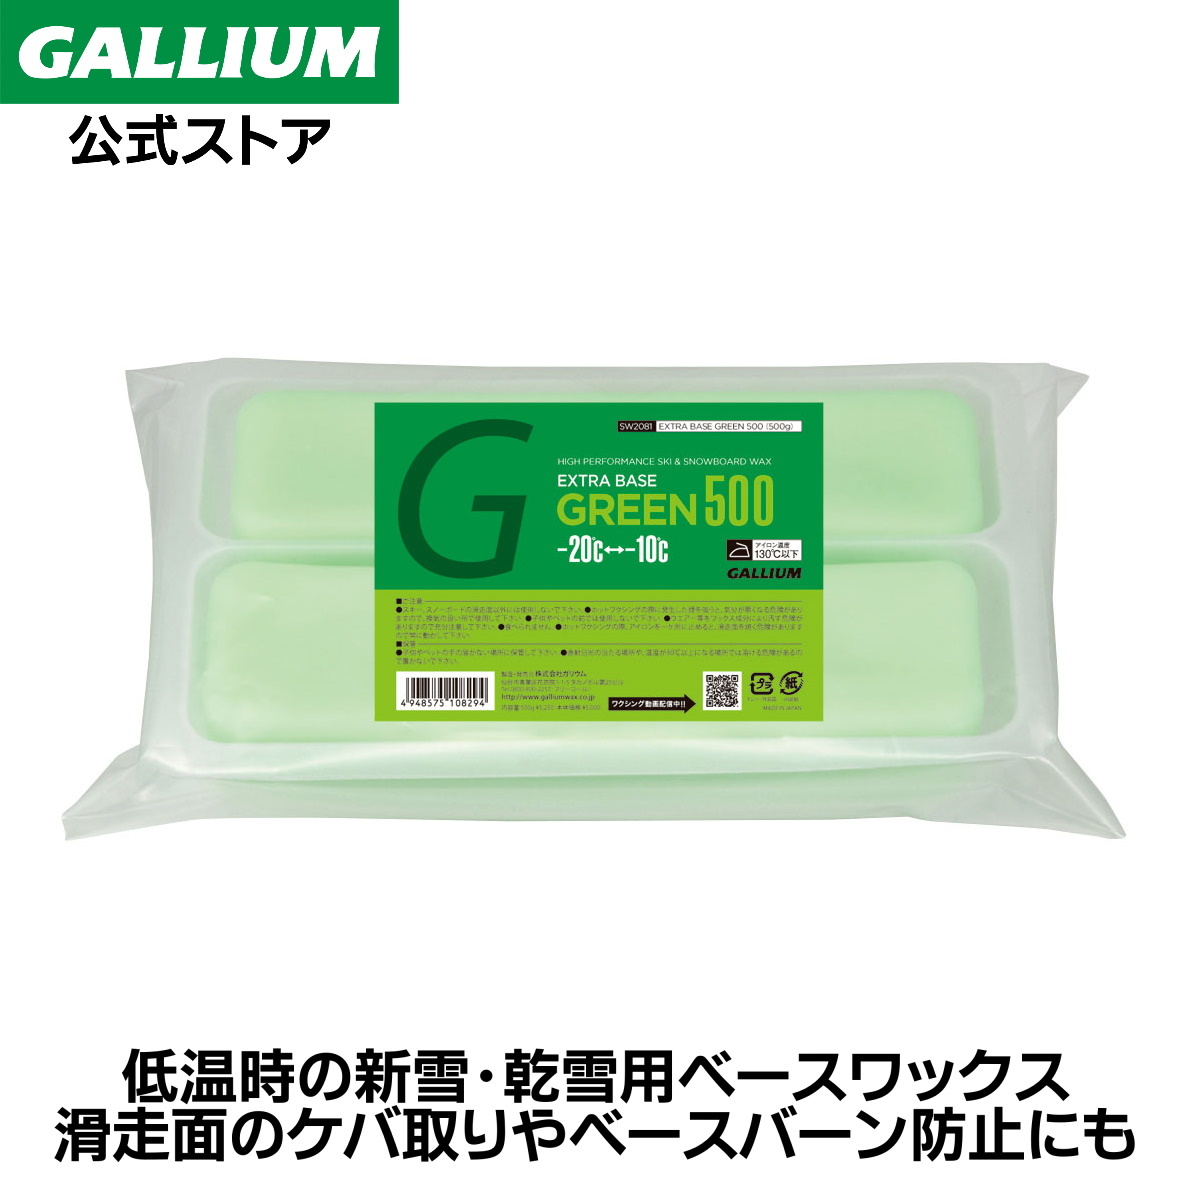 1449円 超人気高品質 GALLIUM ガリウム EXTRA BASE GREEN 500 SW2081 500g